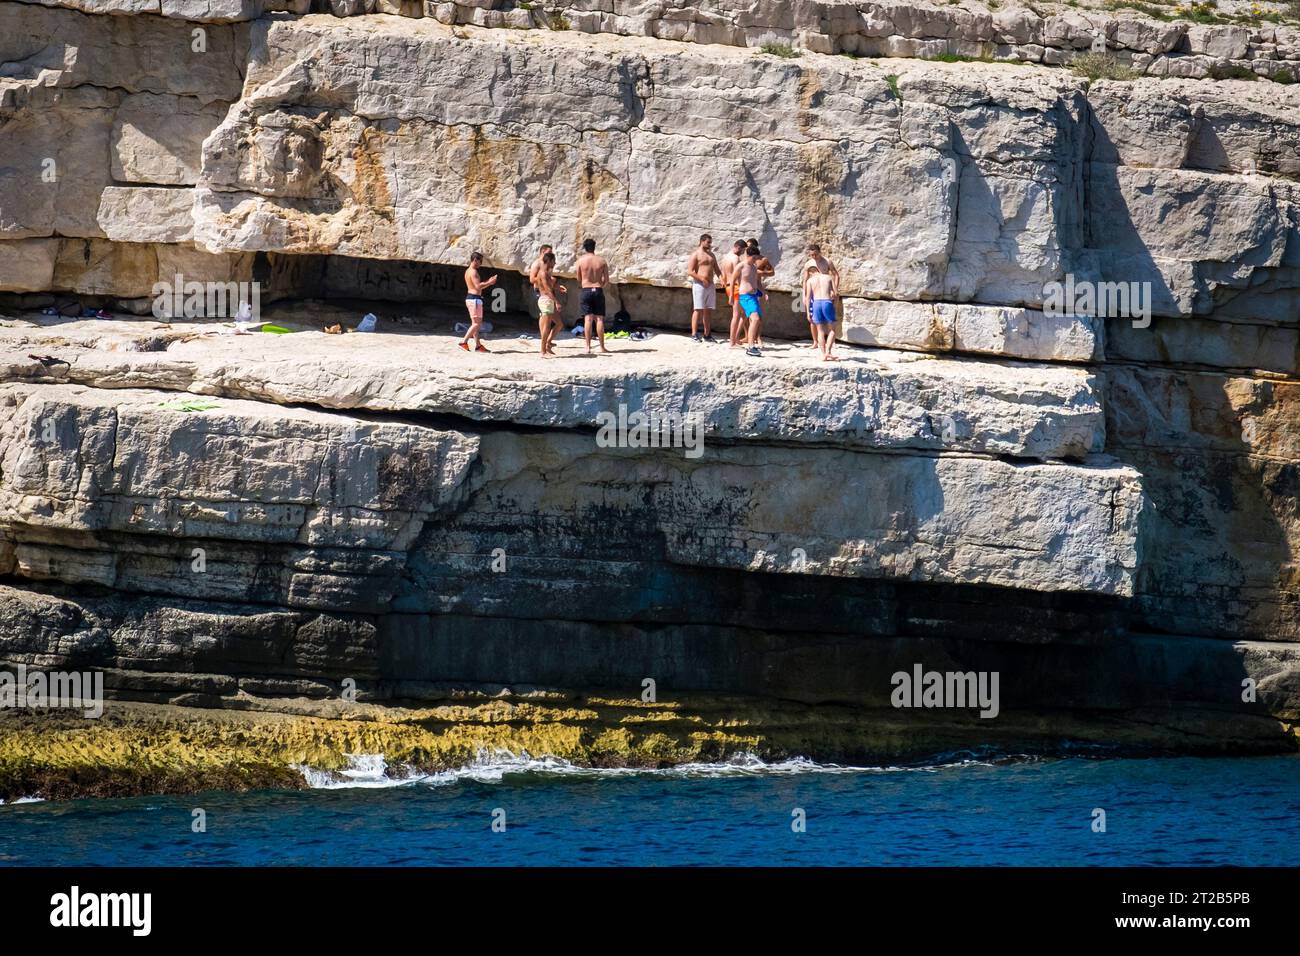 Plusieurs hommes adultes se rassemblent sur une falaise calcaire dans l'une des calanques près de Cassis, dans le sud de la France. Banque D'Images